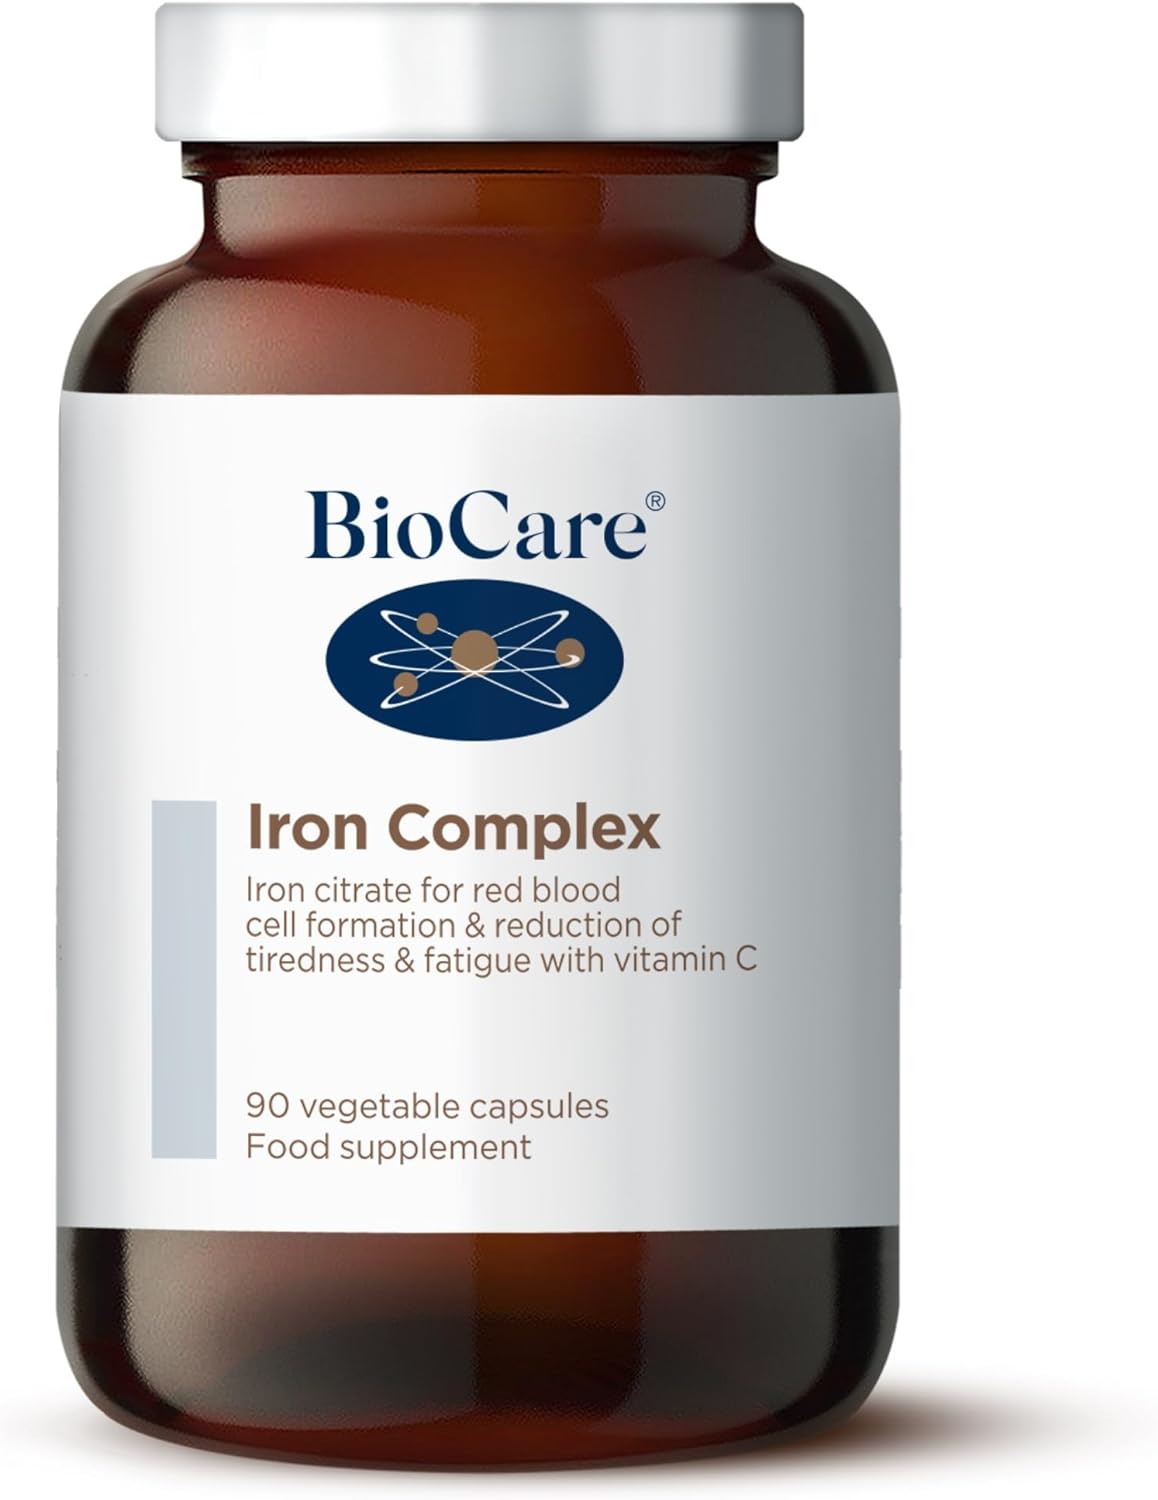 BioCare Iron Complex - 90 Capsules

58.97 Grams